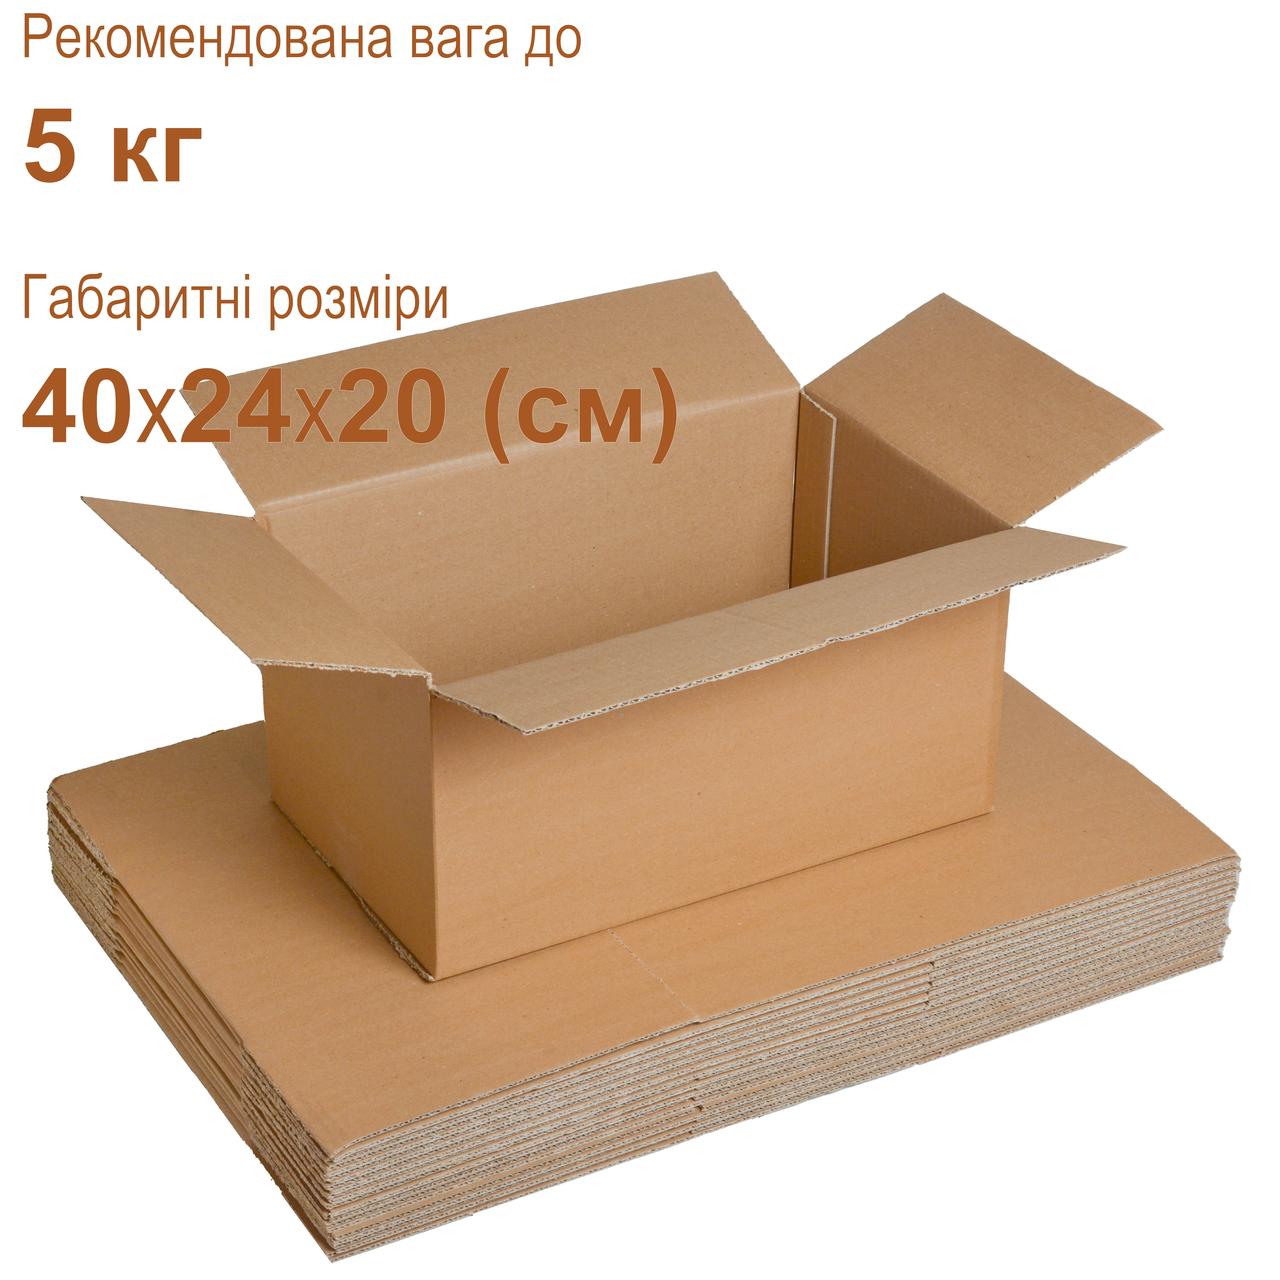 Коробки для пошти 40х24х20 (см) 5 кг, бурі, фото 1